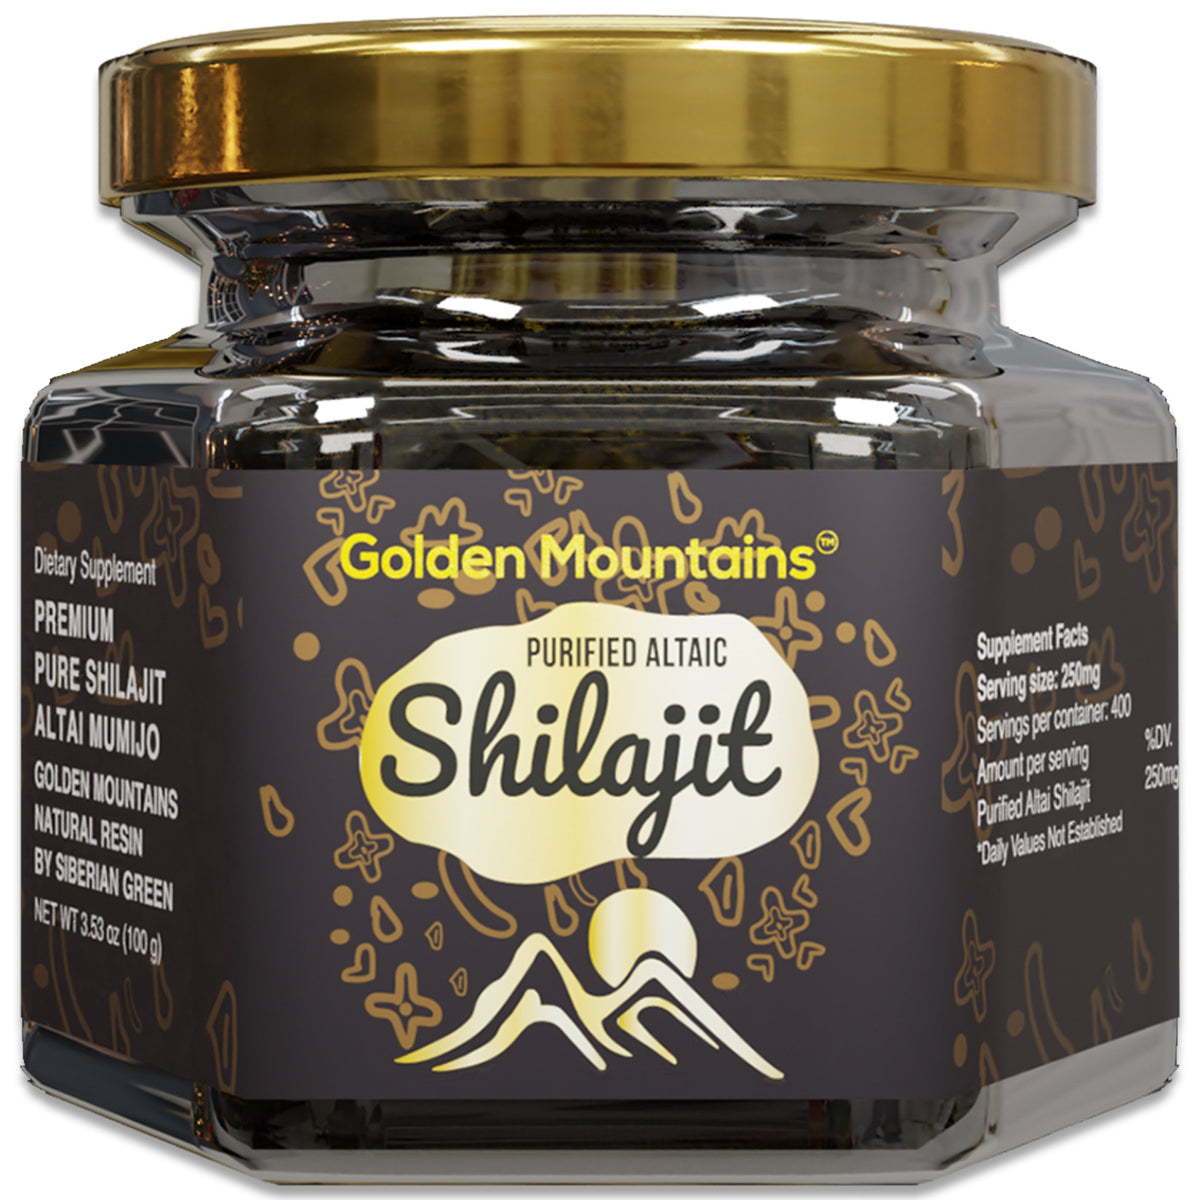 Golden Mountains Shilajit Résine Premium Pure Authentique Sibérie Altaï 100 g 3,53 oz – Cuillère à mesurer – Certificat de qualité exclusif